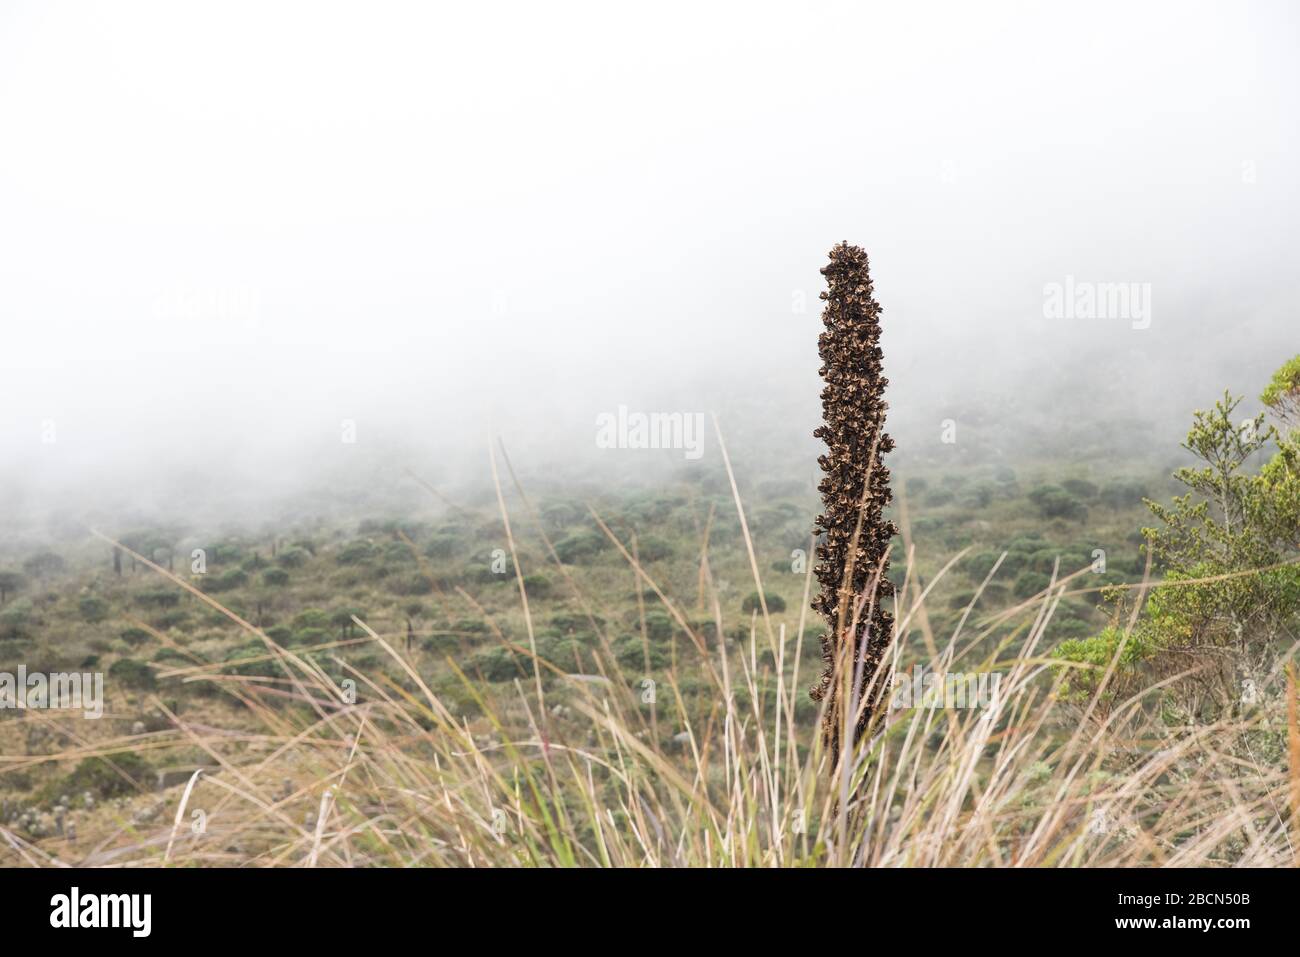 Parco Nazionale di Chingaza, Colombia. Paramo vegetazione: puya goudotiana, una grande bromeliade nativo delle Ande Montagne. Foto Stock